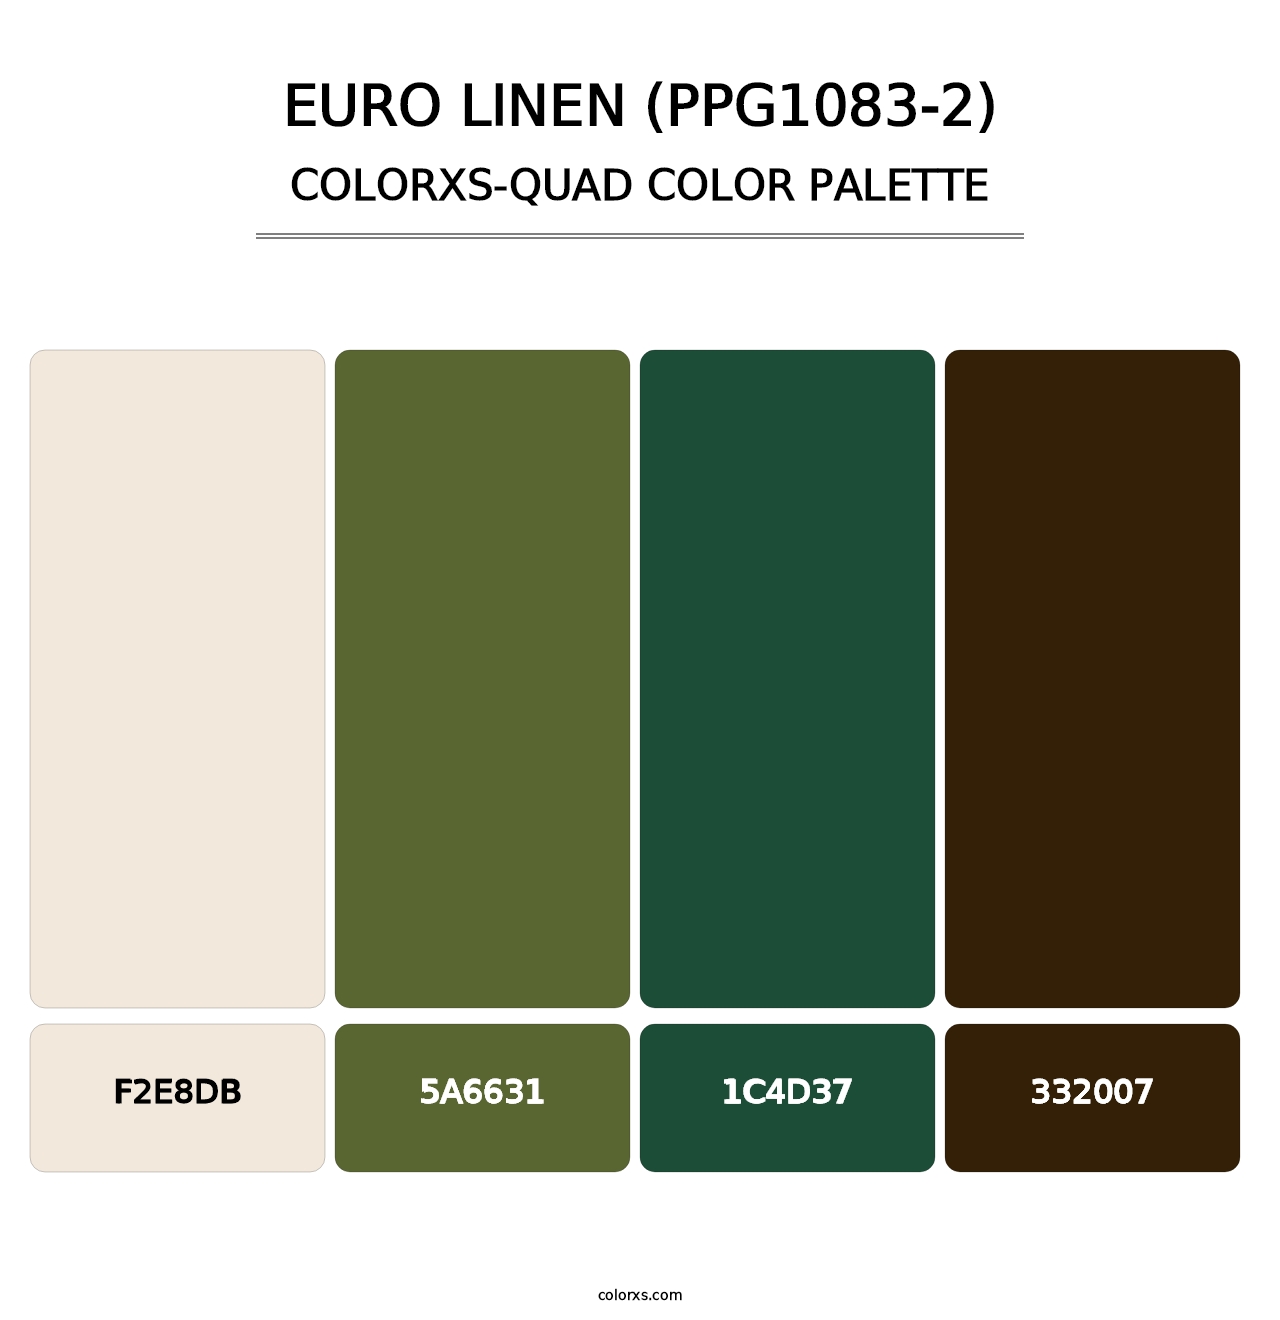 Euro Linen (PPG1083-2) - Colorxs Quad Palette